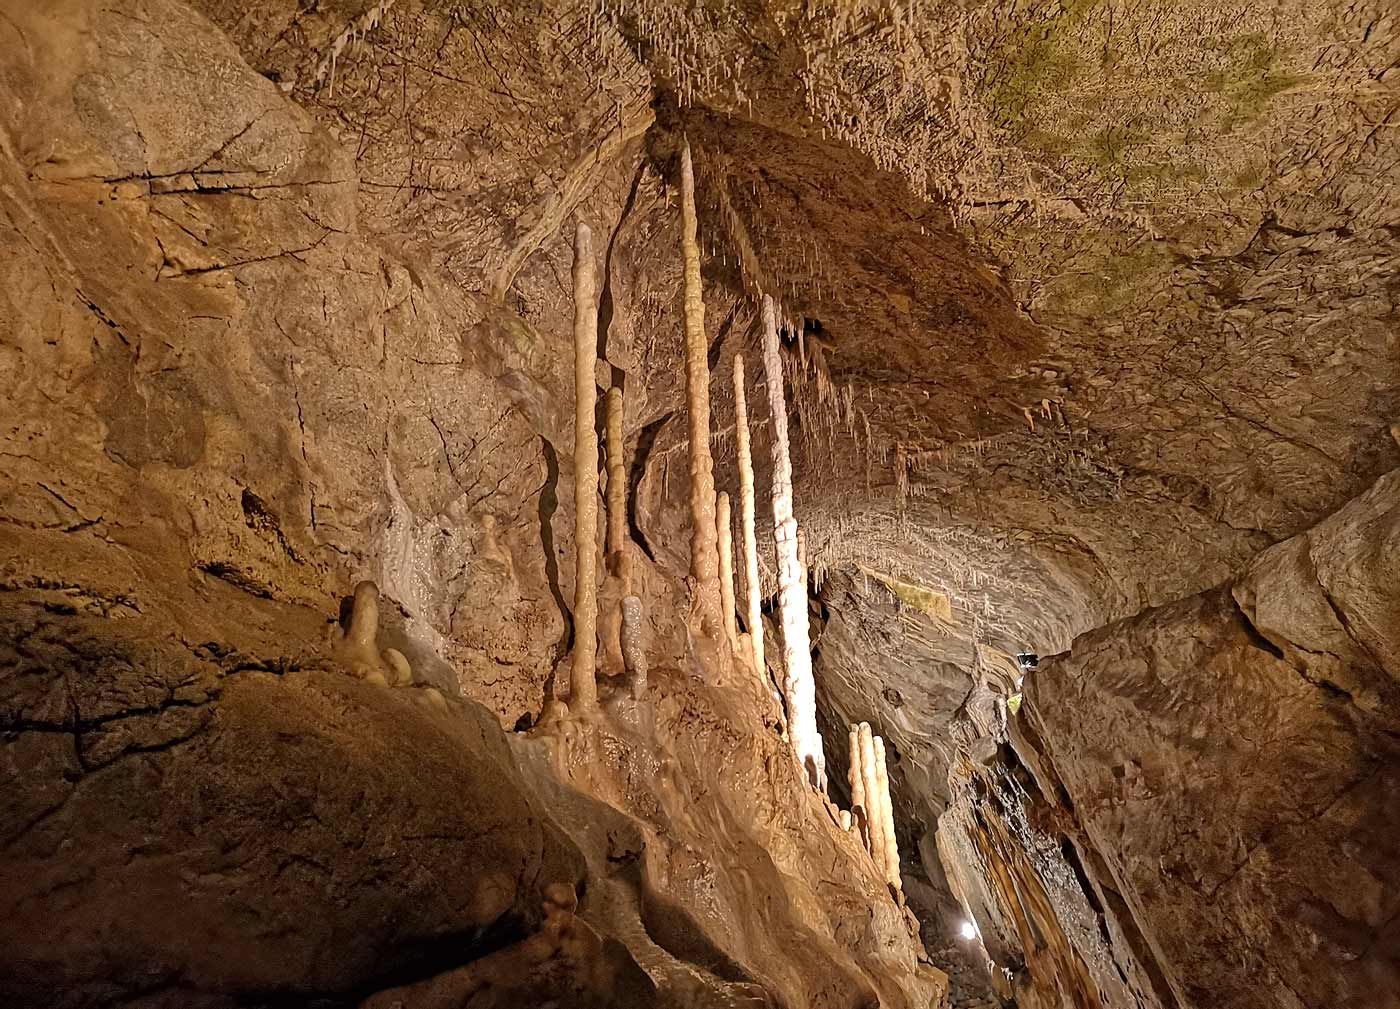 HErmannshöhle